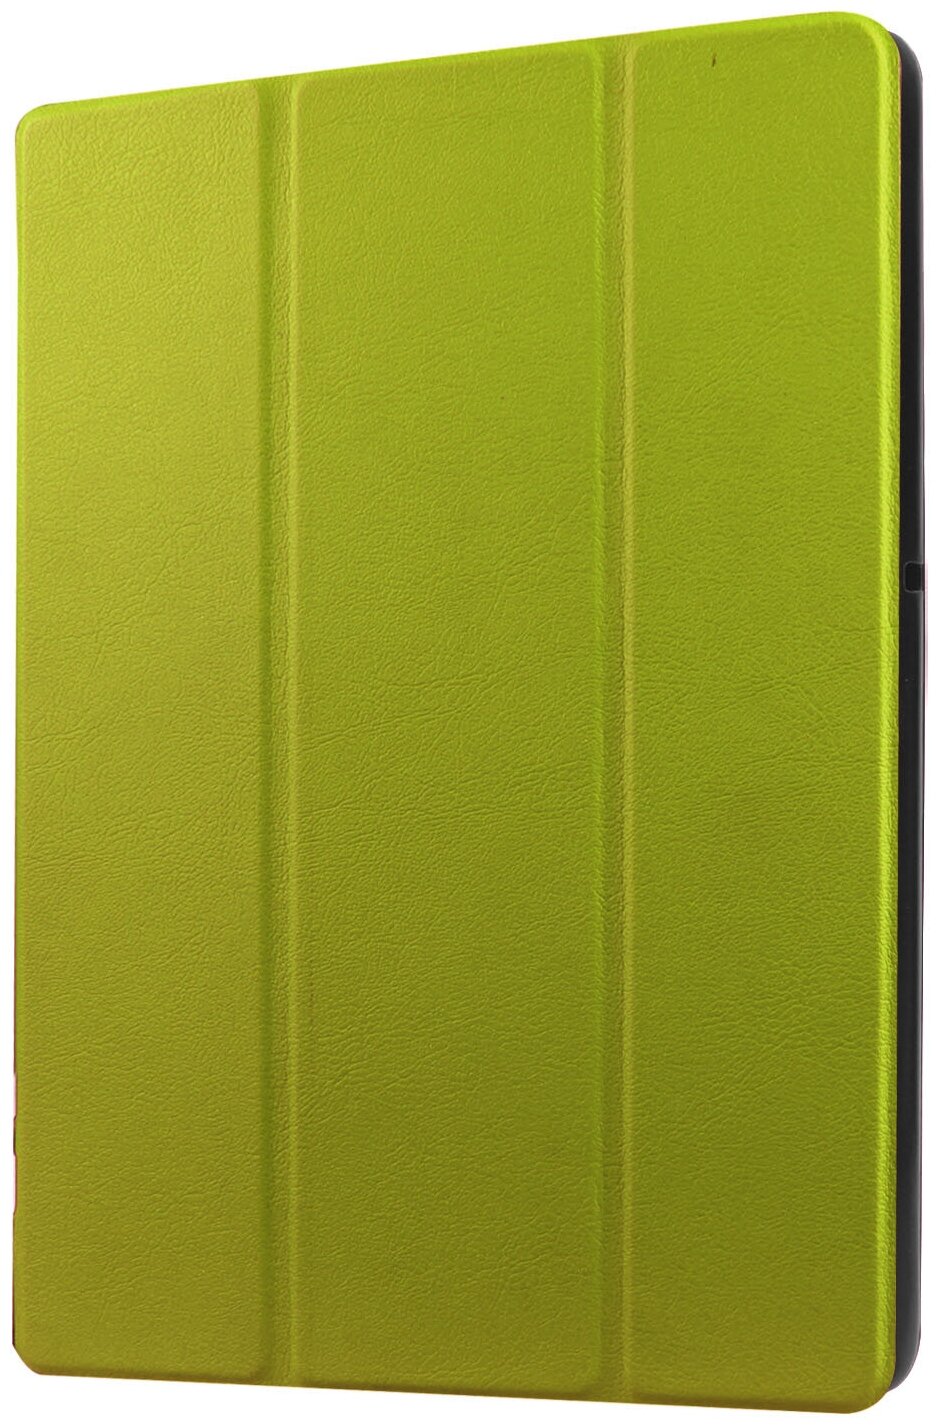 Чехол-обложка MyPads для iPad mini 4 7.9 (2015) - A1538, A1550 тонкий умный кожаный на пластиковой основе с трансформацией в подставку зеленый